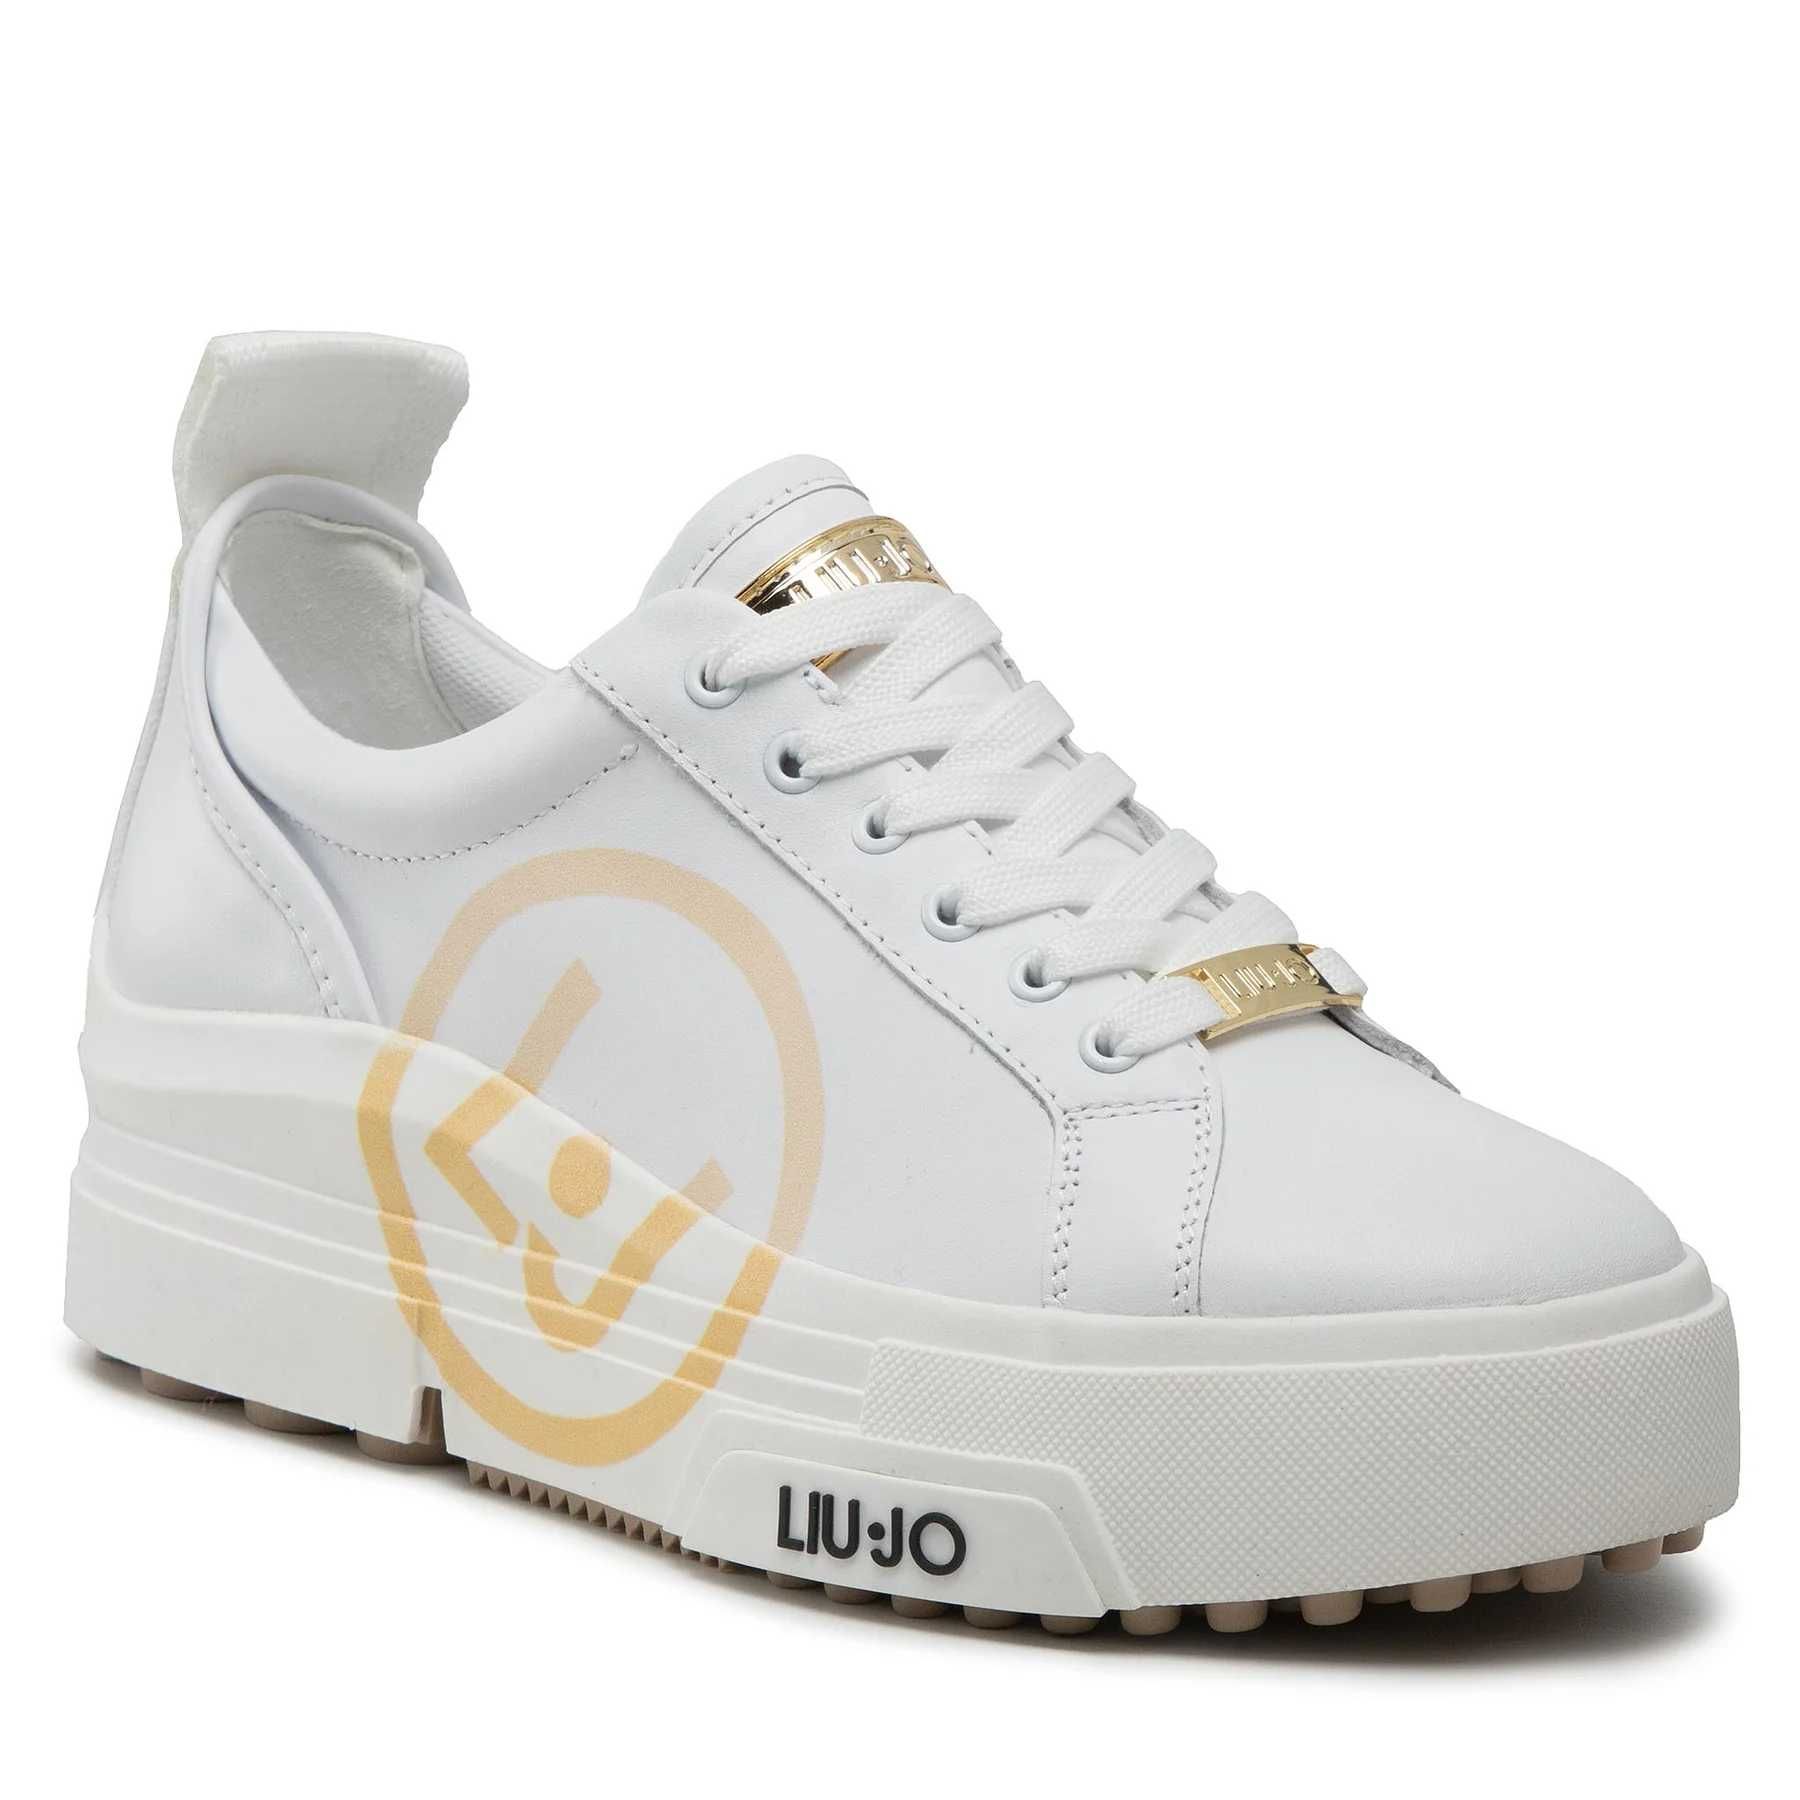 Liu Jo
Sneakersy Hero białe sneakersy buty skórzane 40